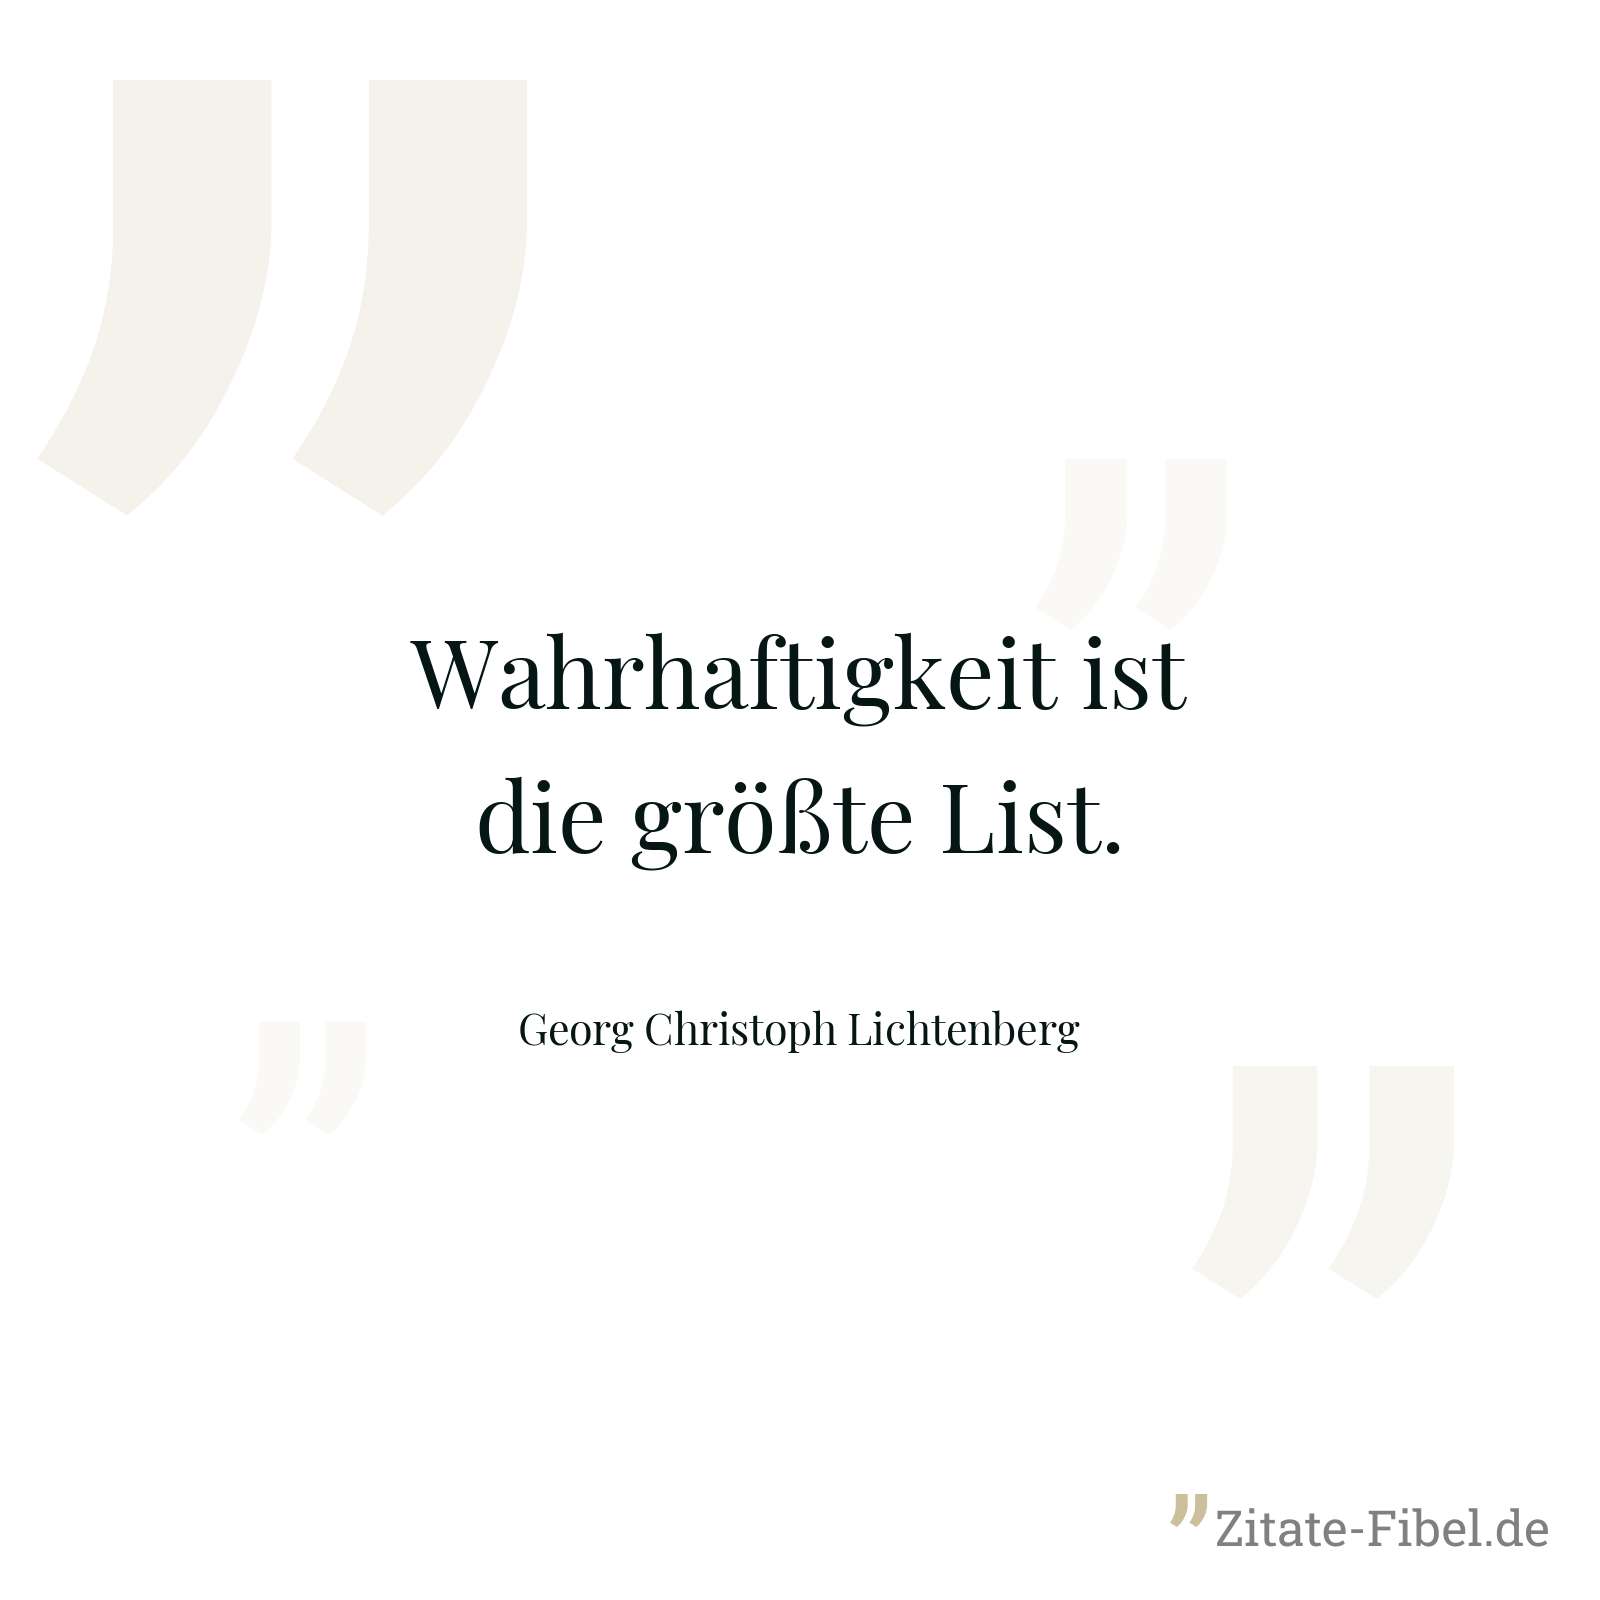 Wahrhaftigkeit ist die größte List. - Georg Christoph Lichtenberg